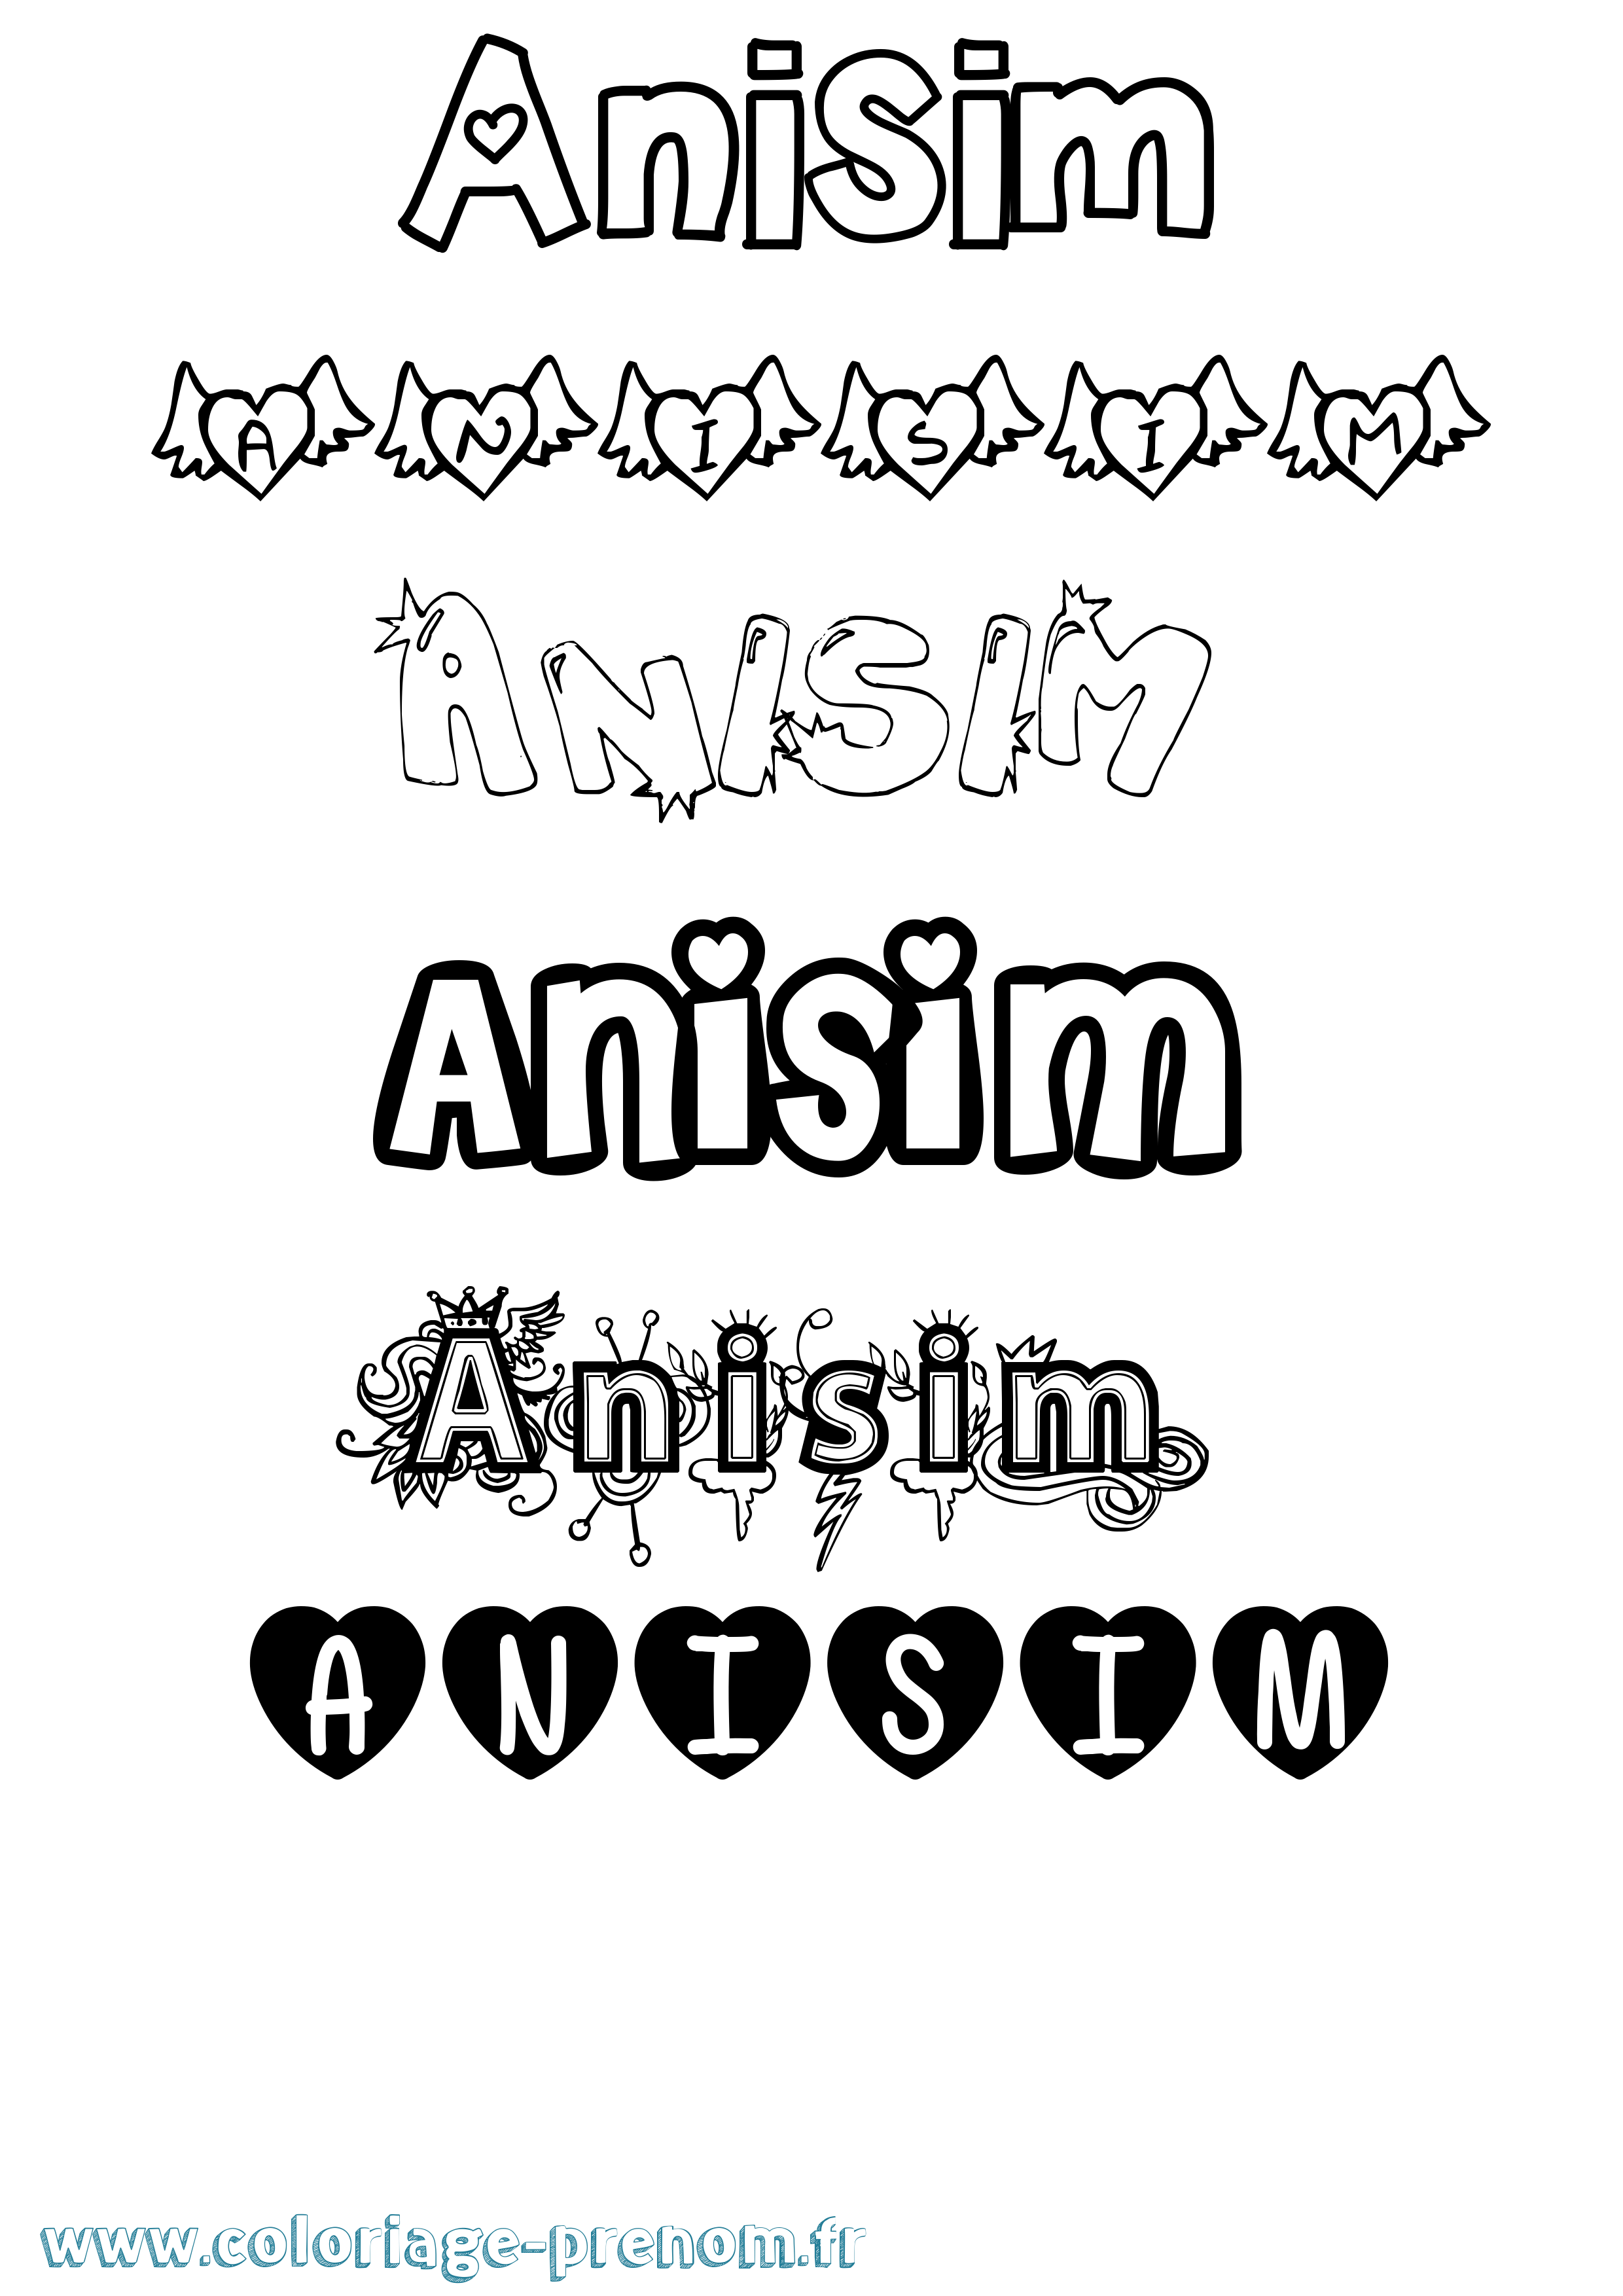 Coloriage prénom Anisim Girly